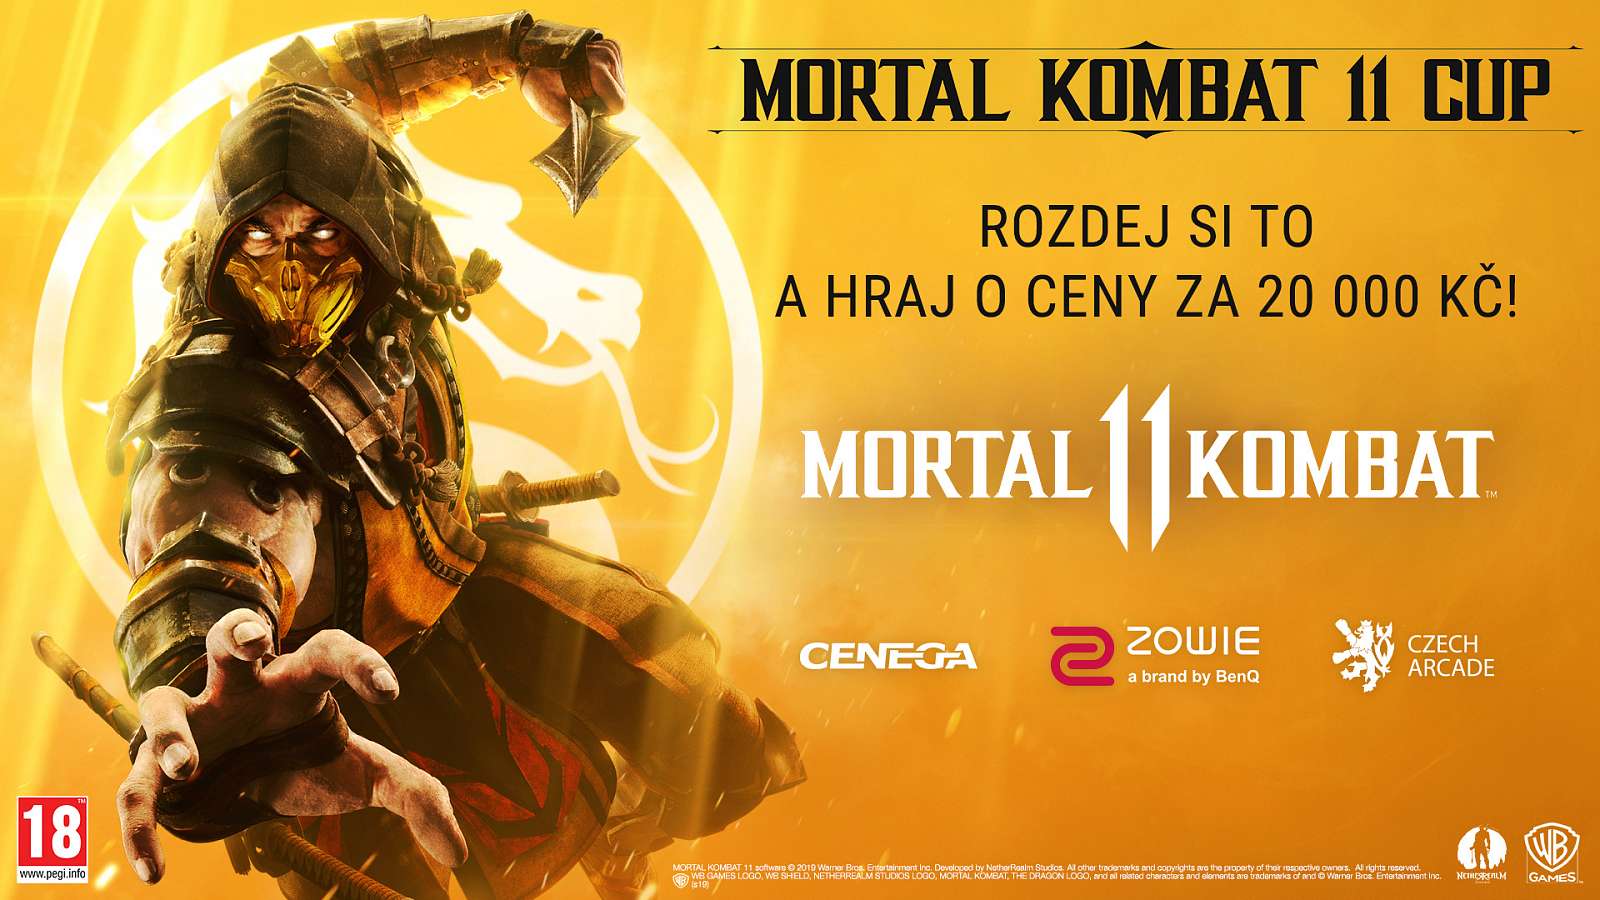 Osm postupujících do Mortal Kombat 11 Cupu už známe, o zbytku se rozhodne těsně před sobotním finále